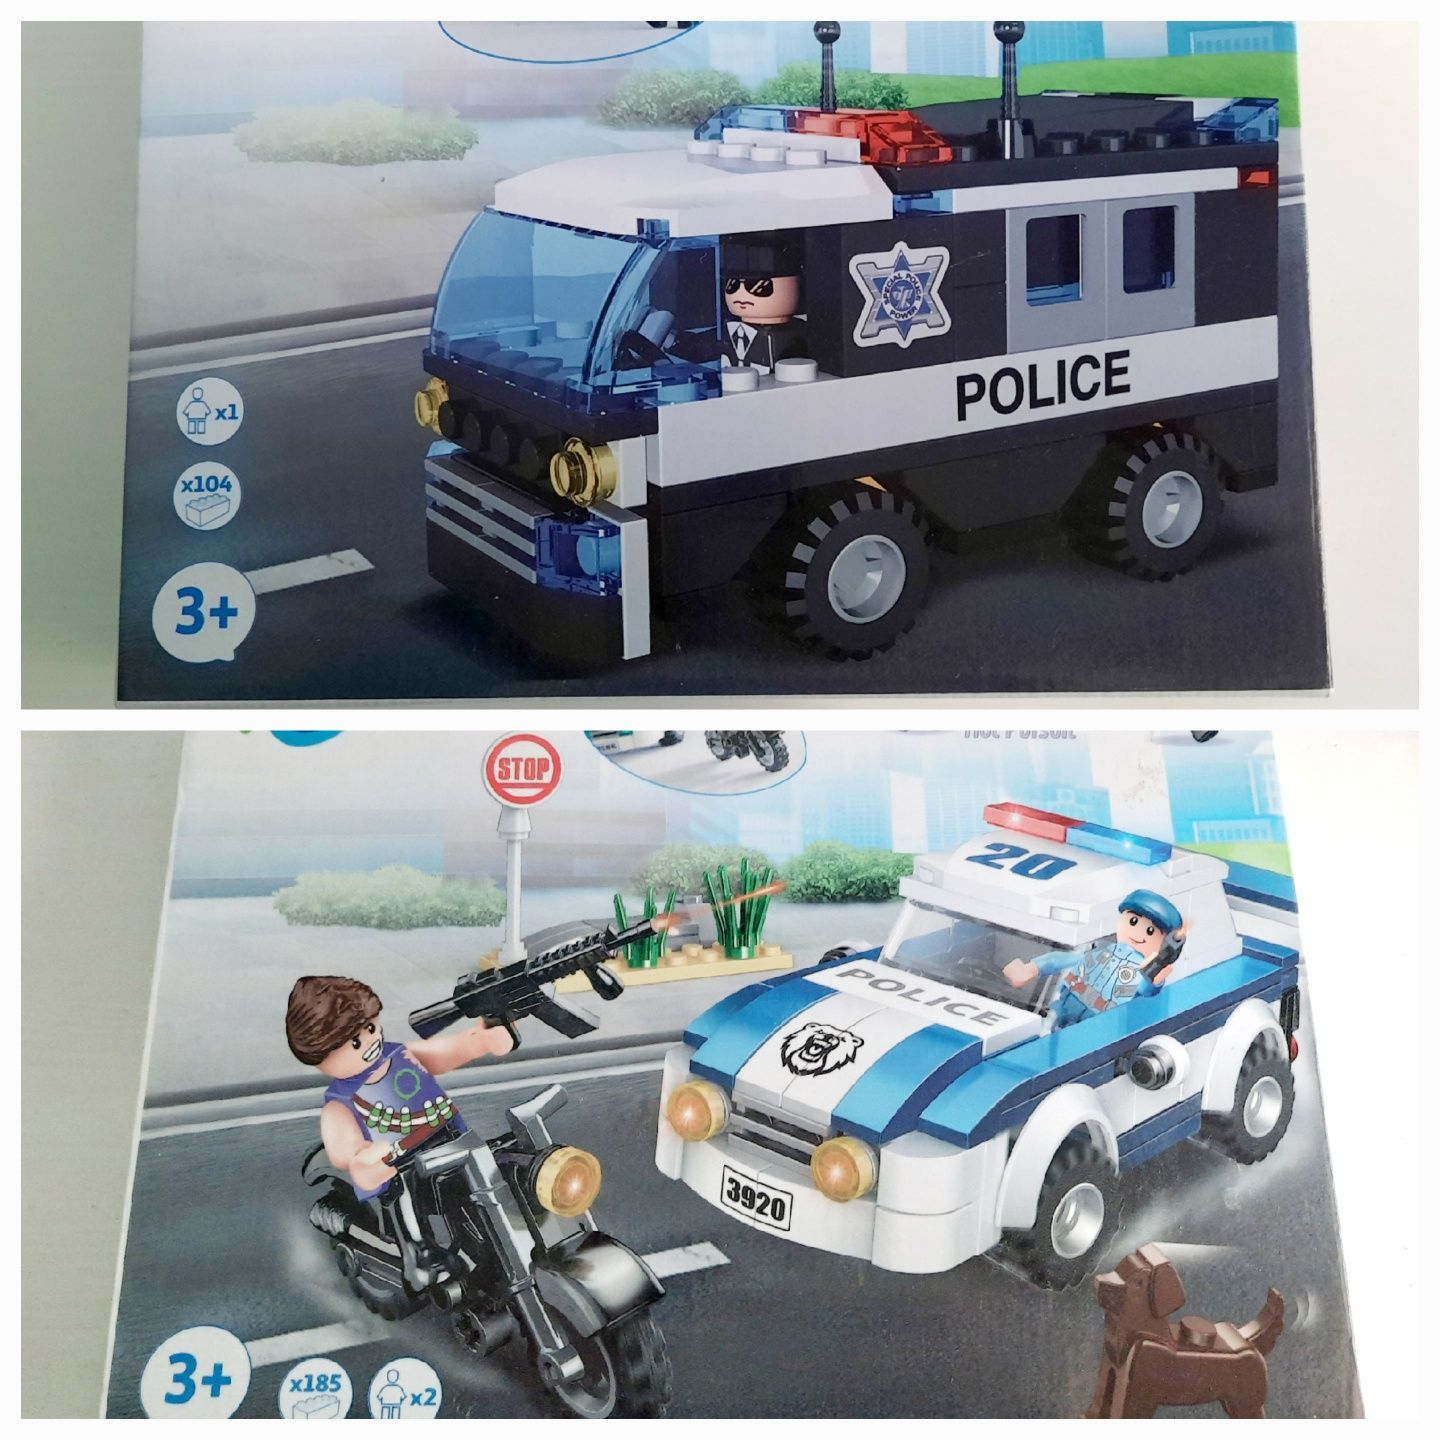 Dois sets de blocos estilo LEGO, Polícias, da One two fun